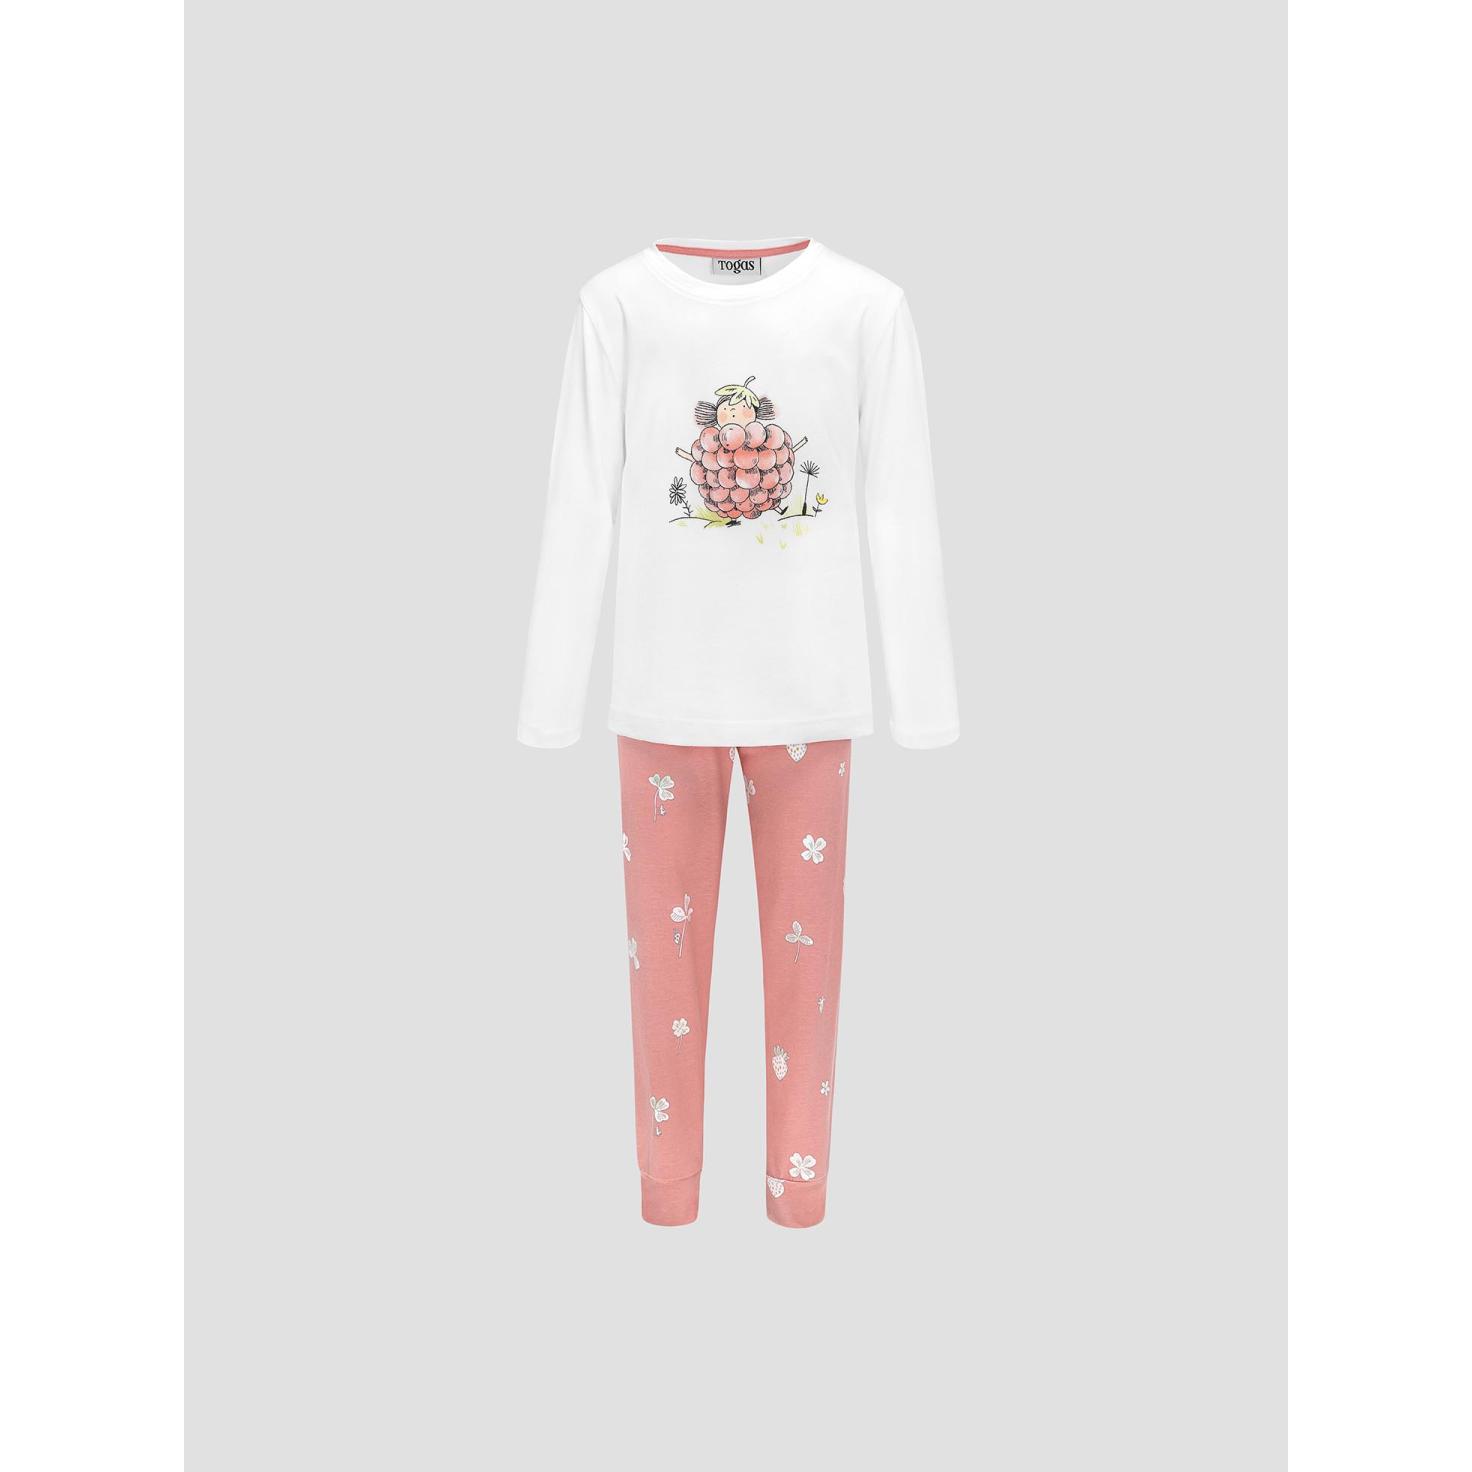 Пижама для девочек Kids by togas Стробби бело-розовый 140-146 см пижама togas эсме бело сиреневая женская